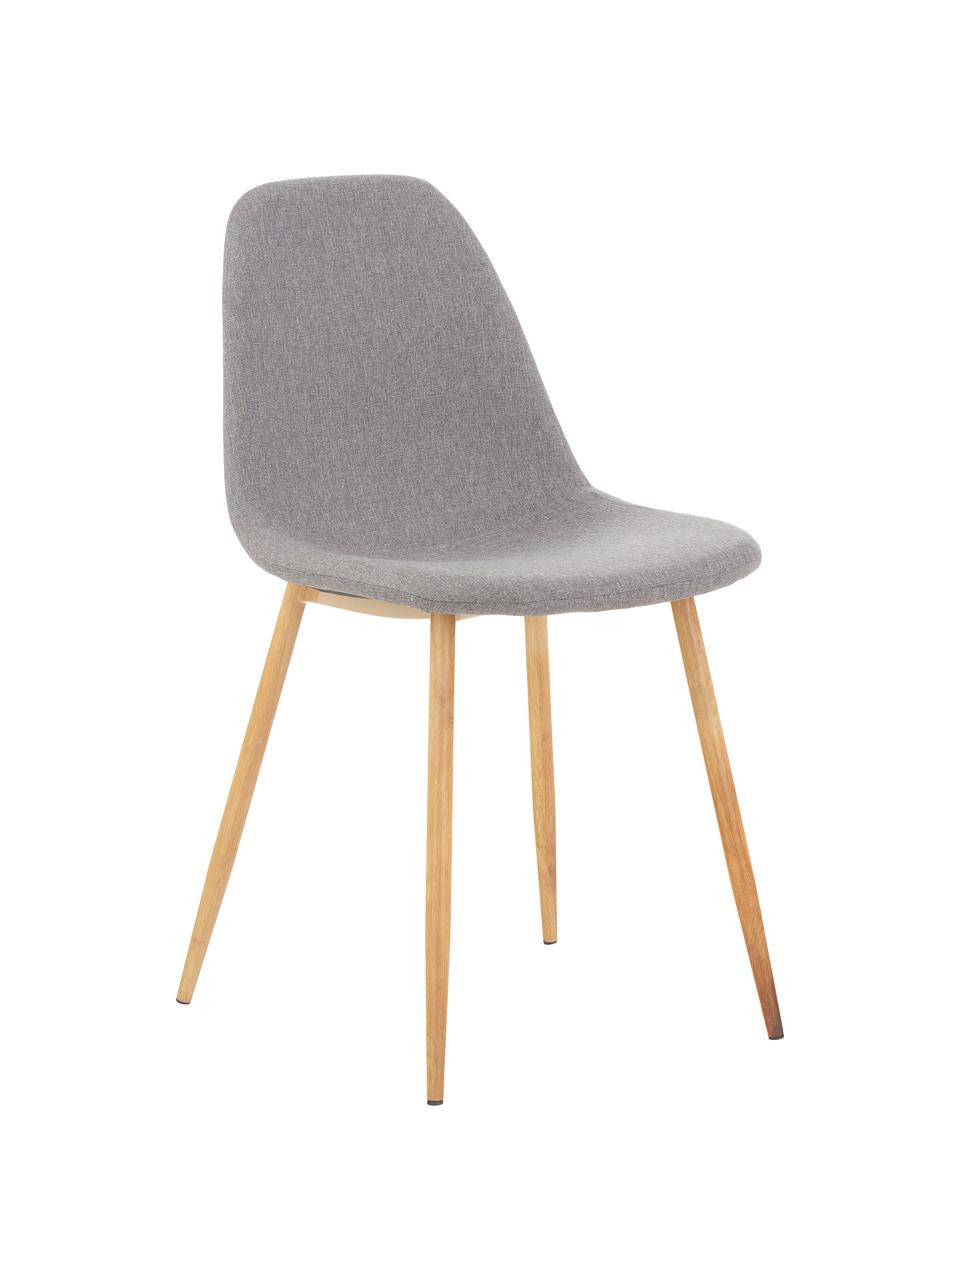 Gestoffeerde stoelen Wilma, 2 stuks, Poten: metaal met eiken decorati, Bekleding: polyester, Poten: eiken Bekleding: lichtgrijs, 45 x 84 cm